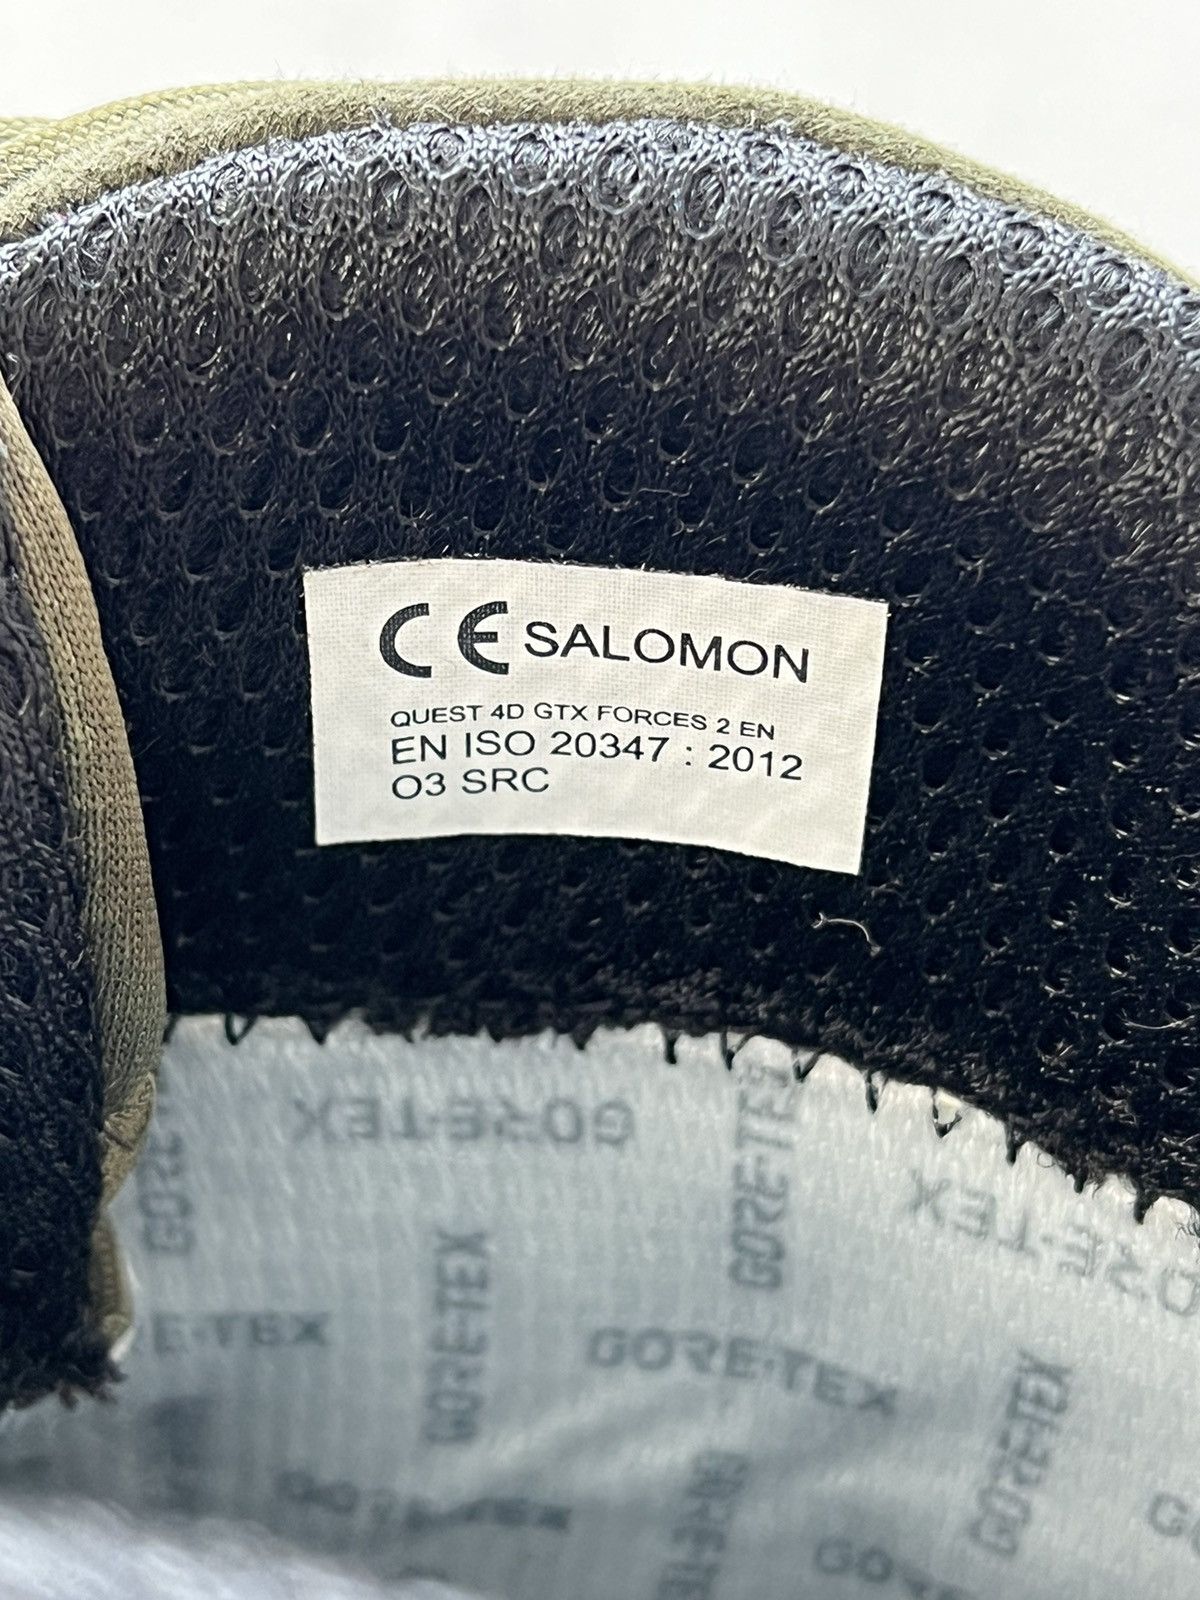 Salomon Salomon Quest 4D GTX Boots Size US 9.5 / EU 42-43 - 9 Thumbnail